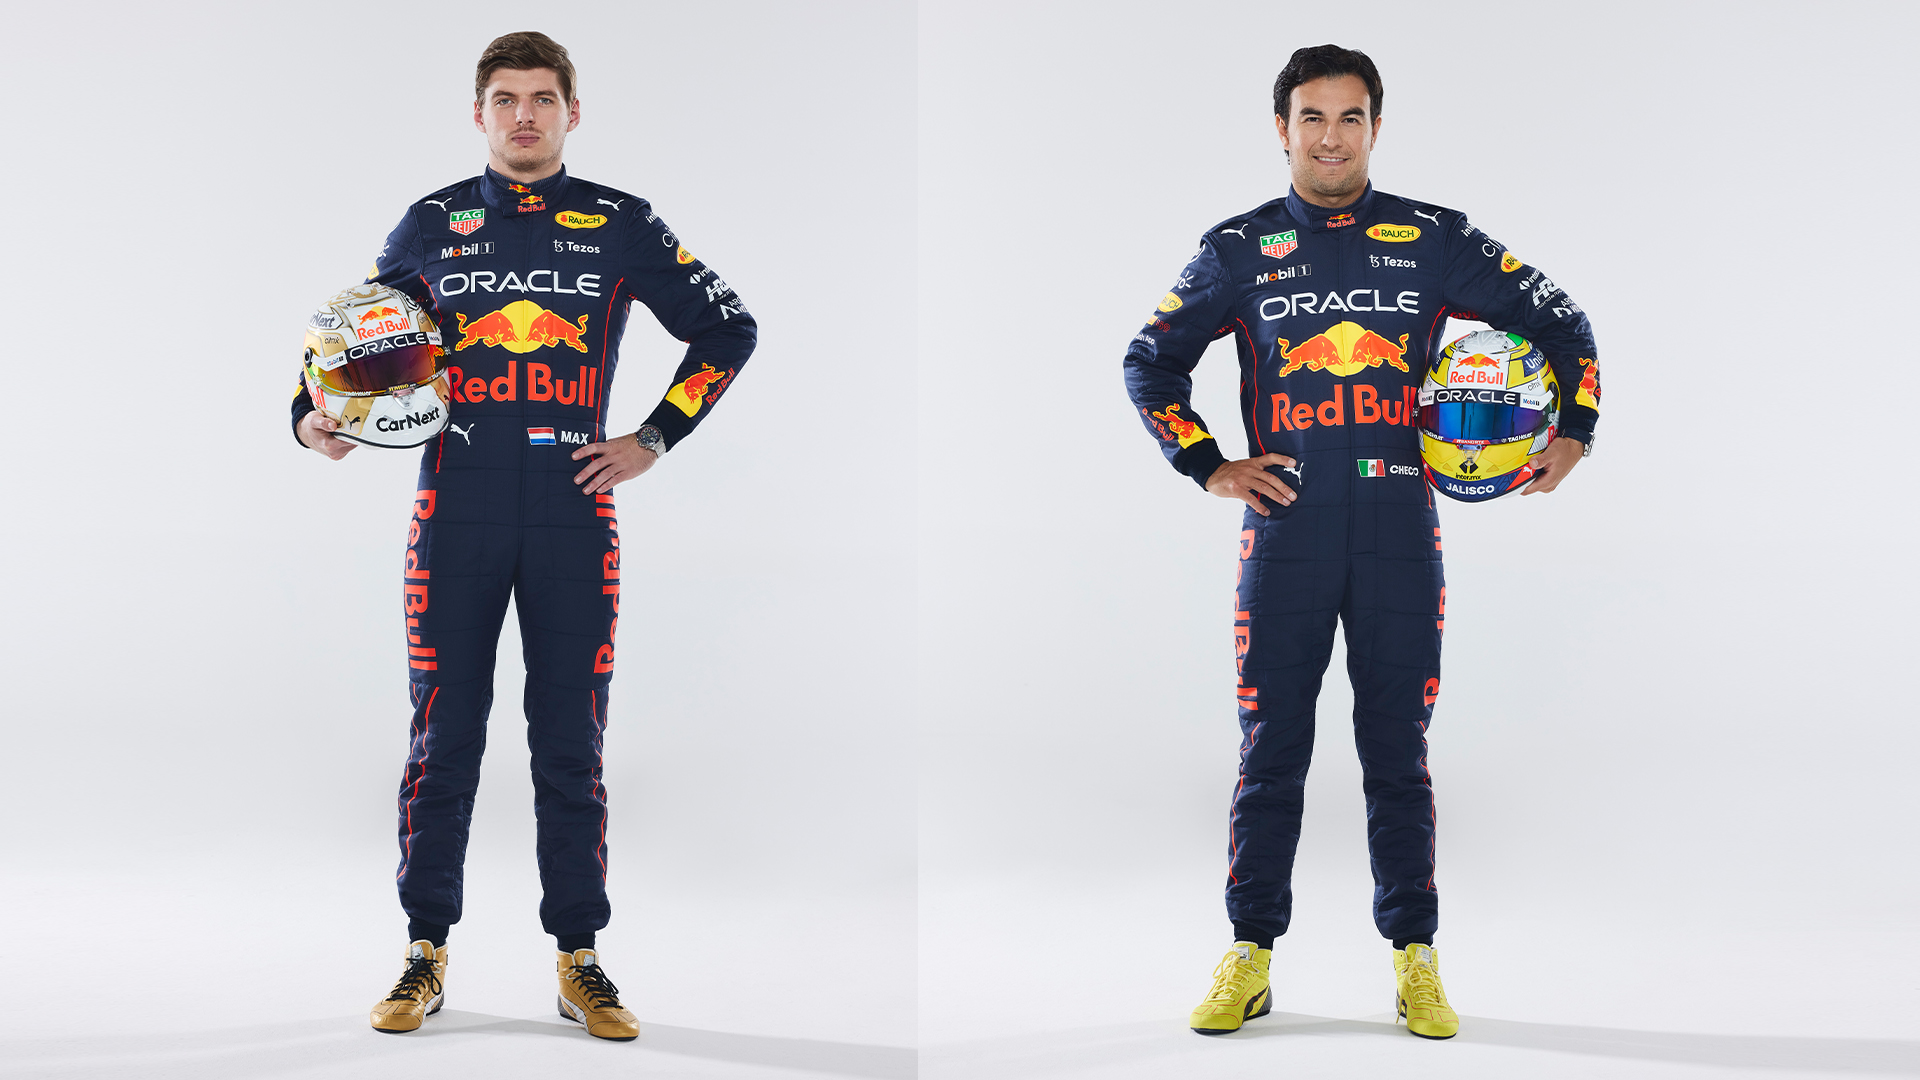 El Nuevo Uniforme de Red Bull. All Access Racing Team